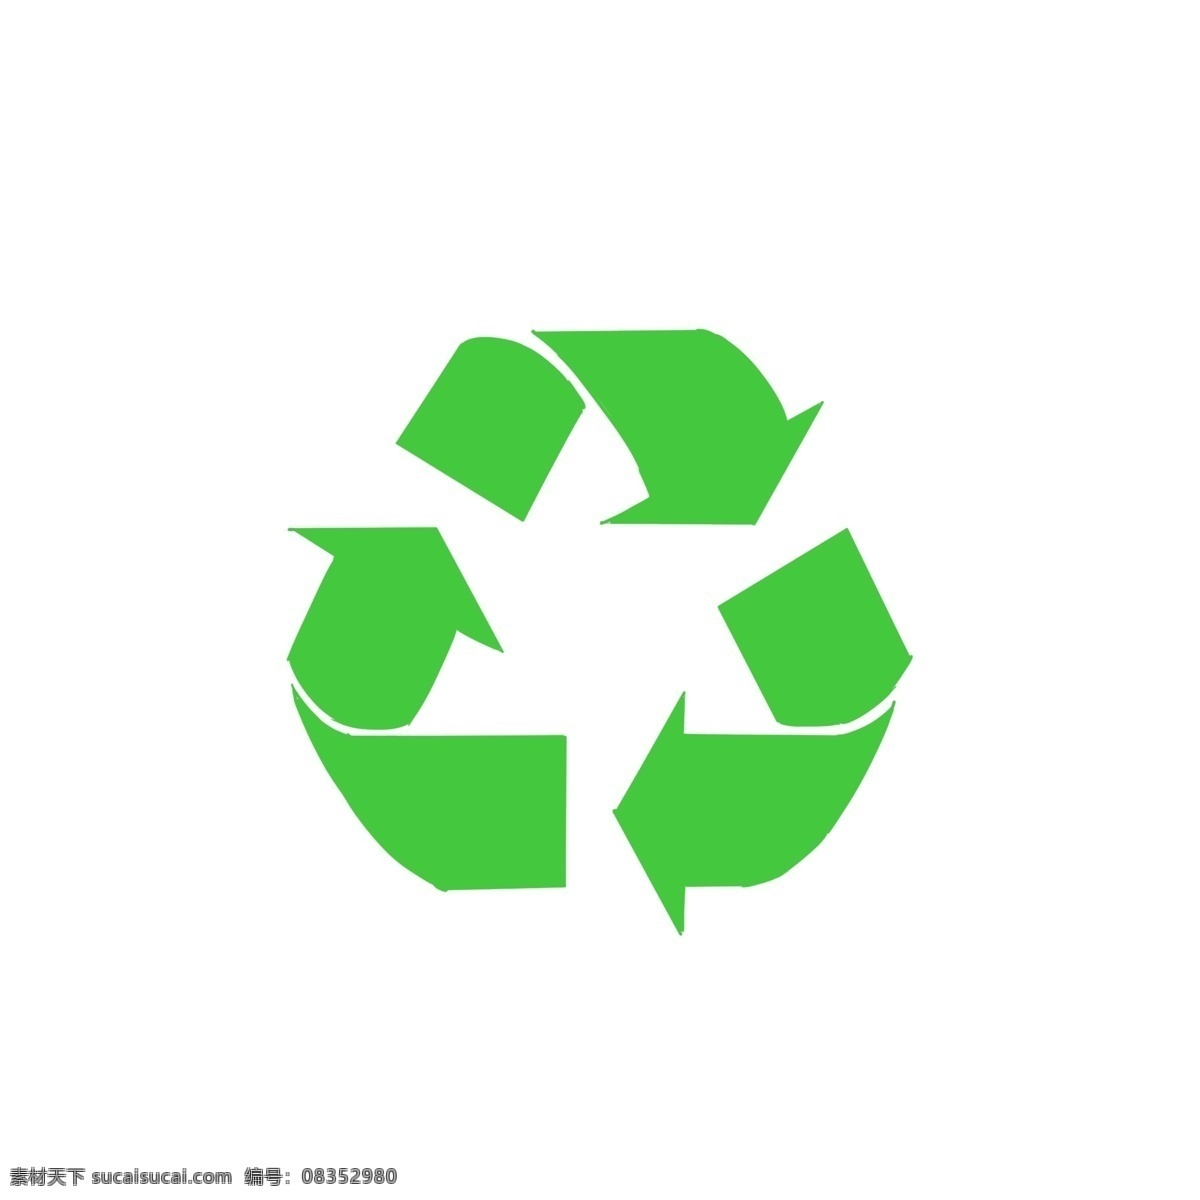 绿色环保 标示 垃圾 回收 绿色环保图案 垃圾可回收 清洁 可回收垃圾 卫生环保 标志图案 环保标志